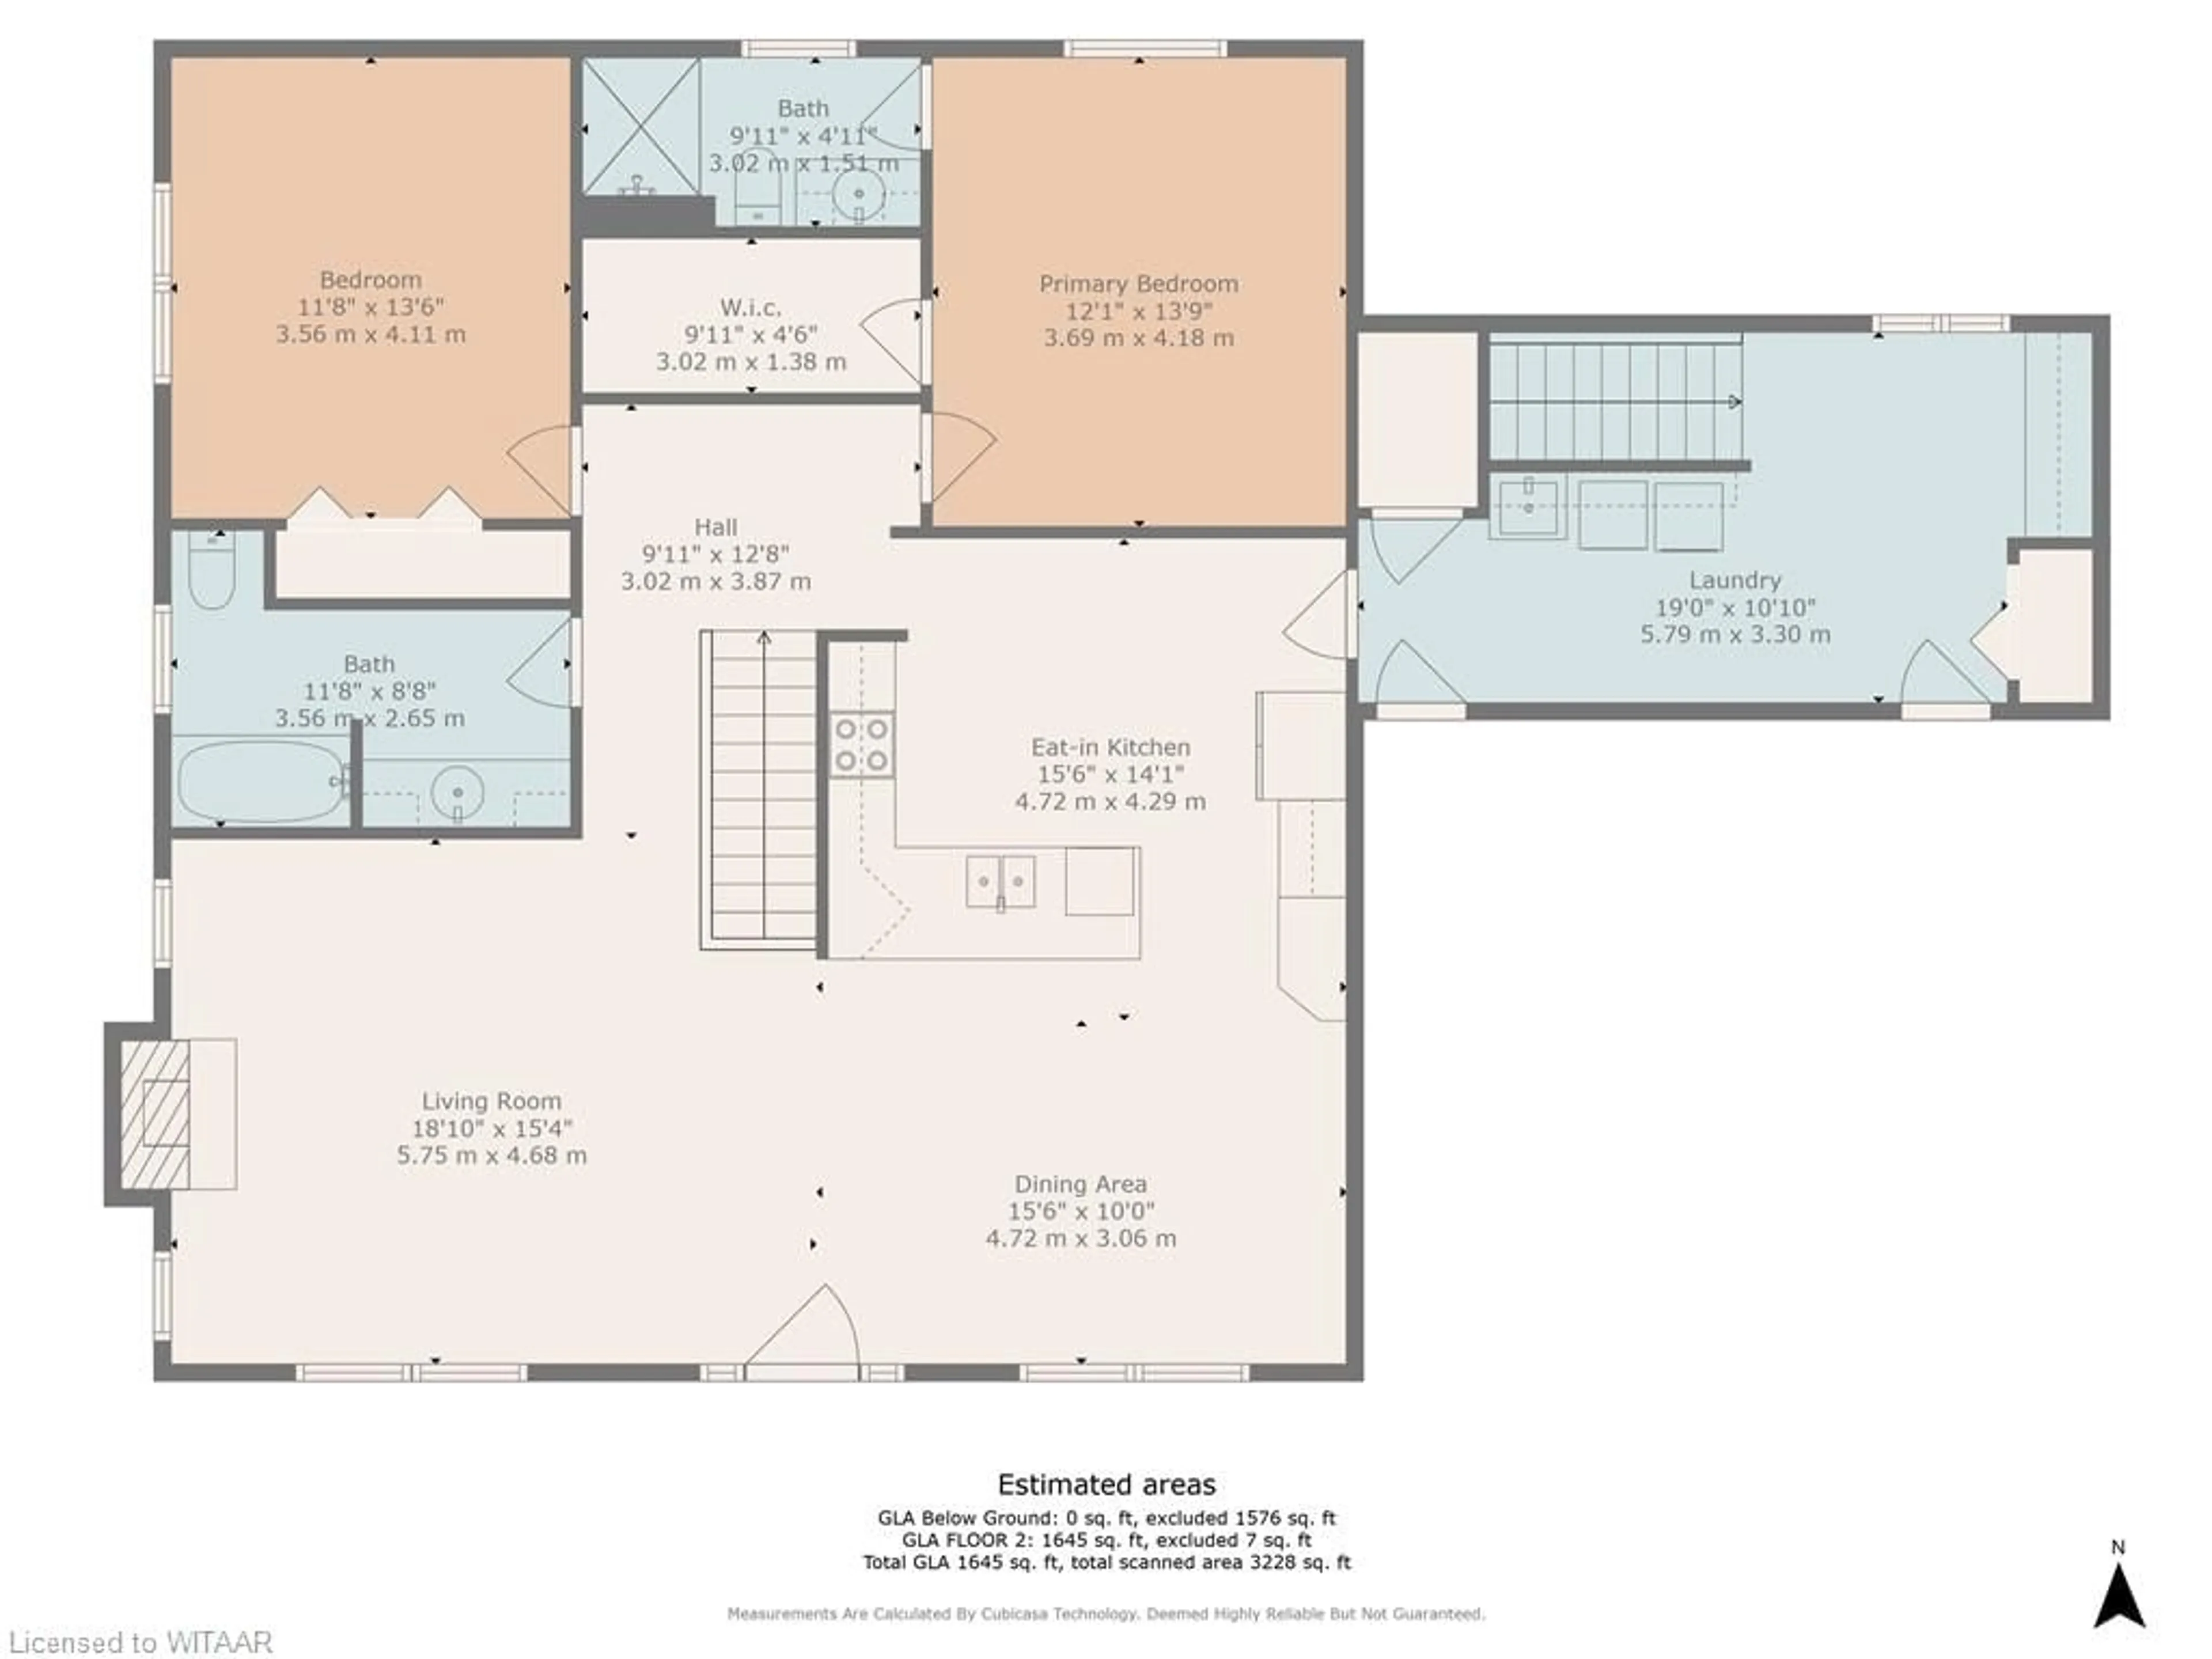 Floor plan for 26 Birch Dr, Tillsonburg Ontario N4G 2V2